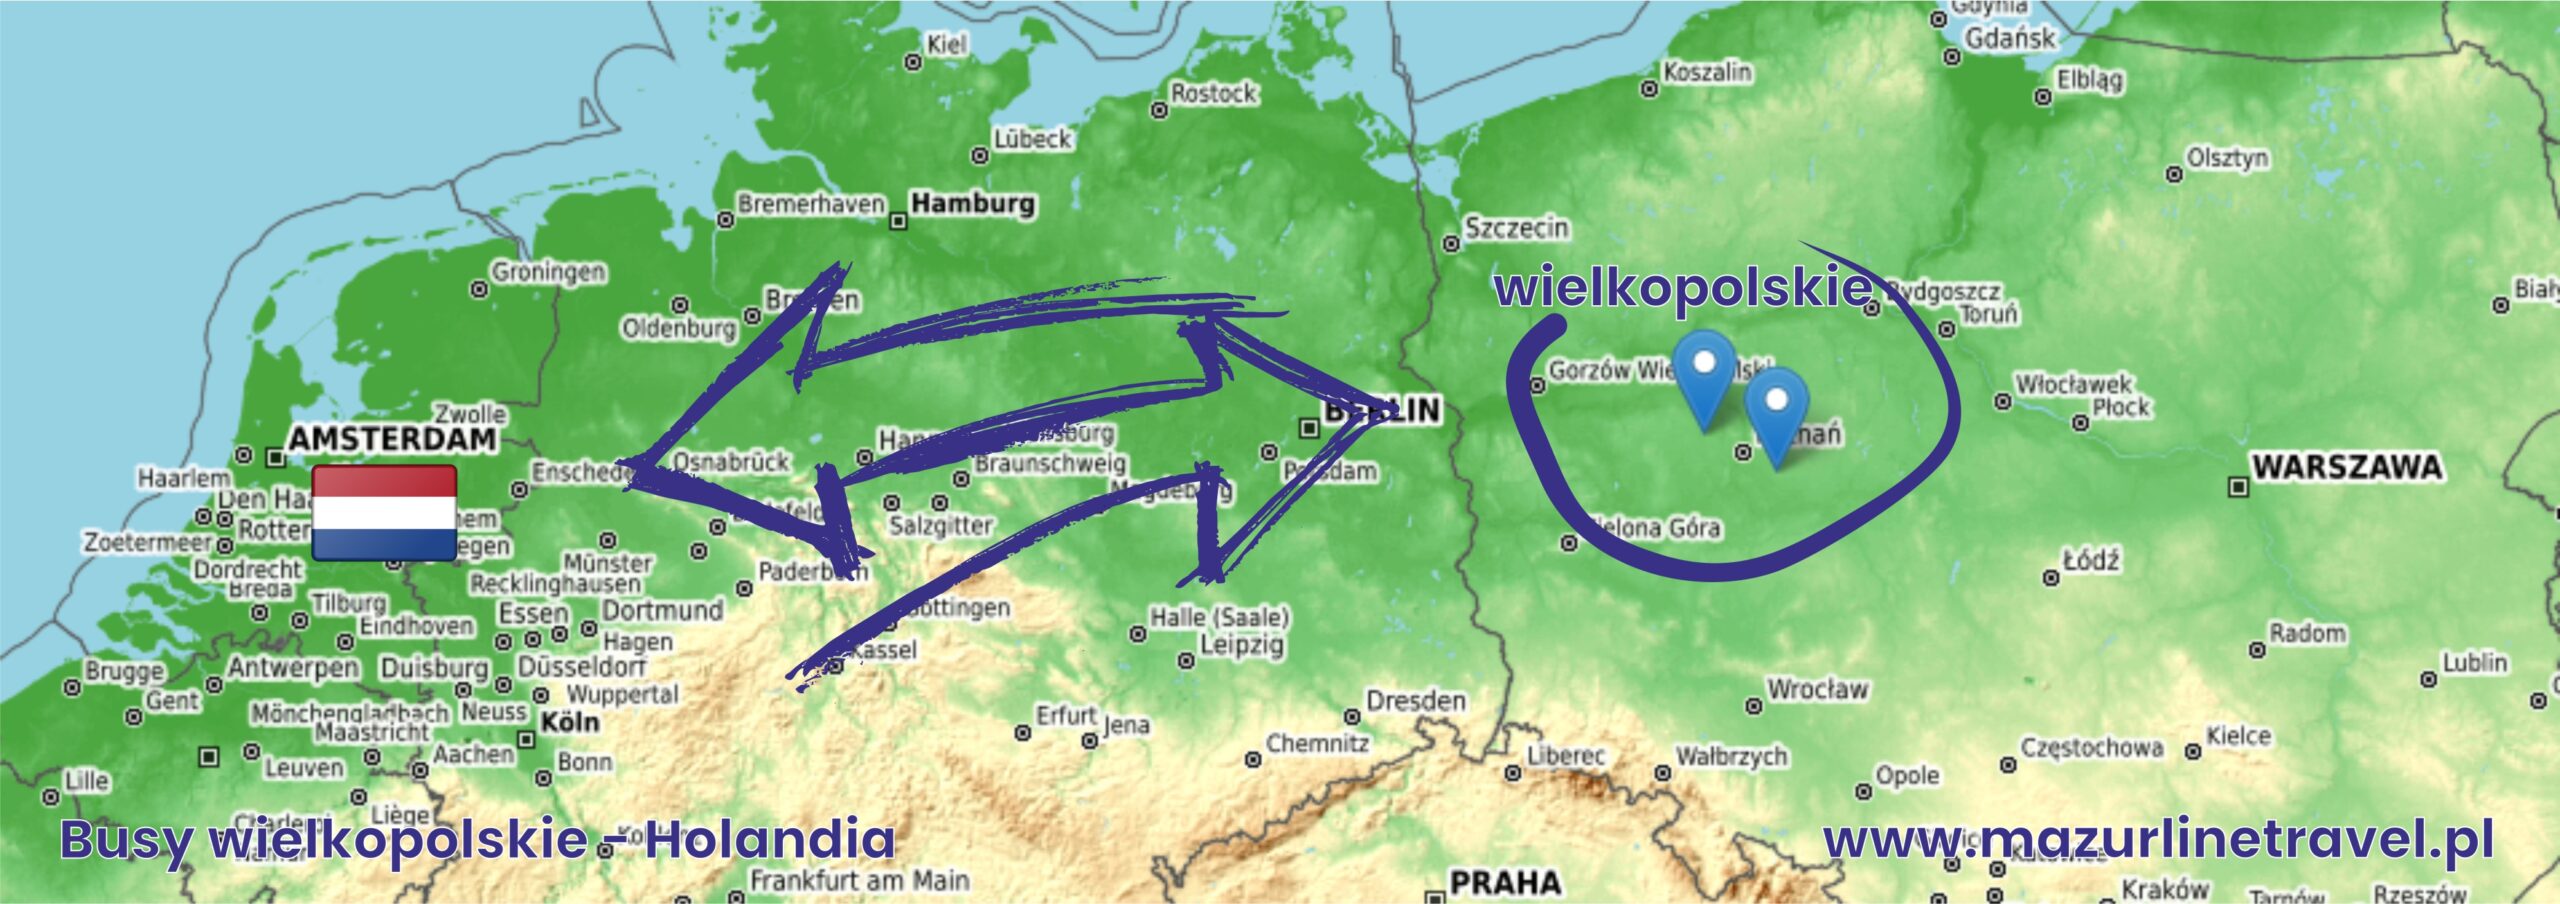 Busy osobowe z wielkopolski do Holandii